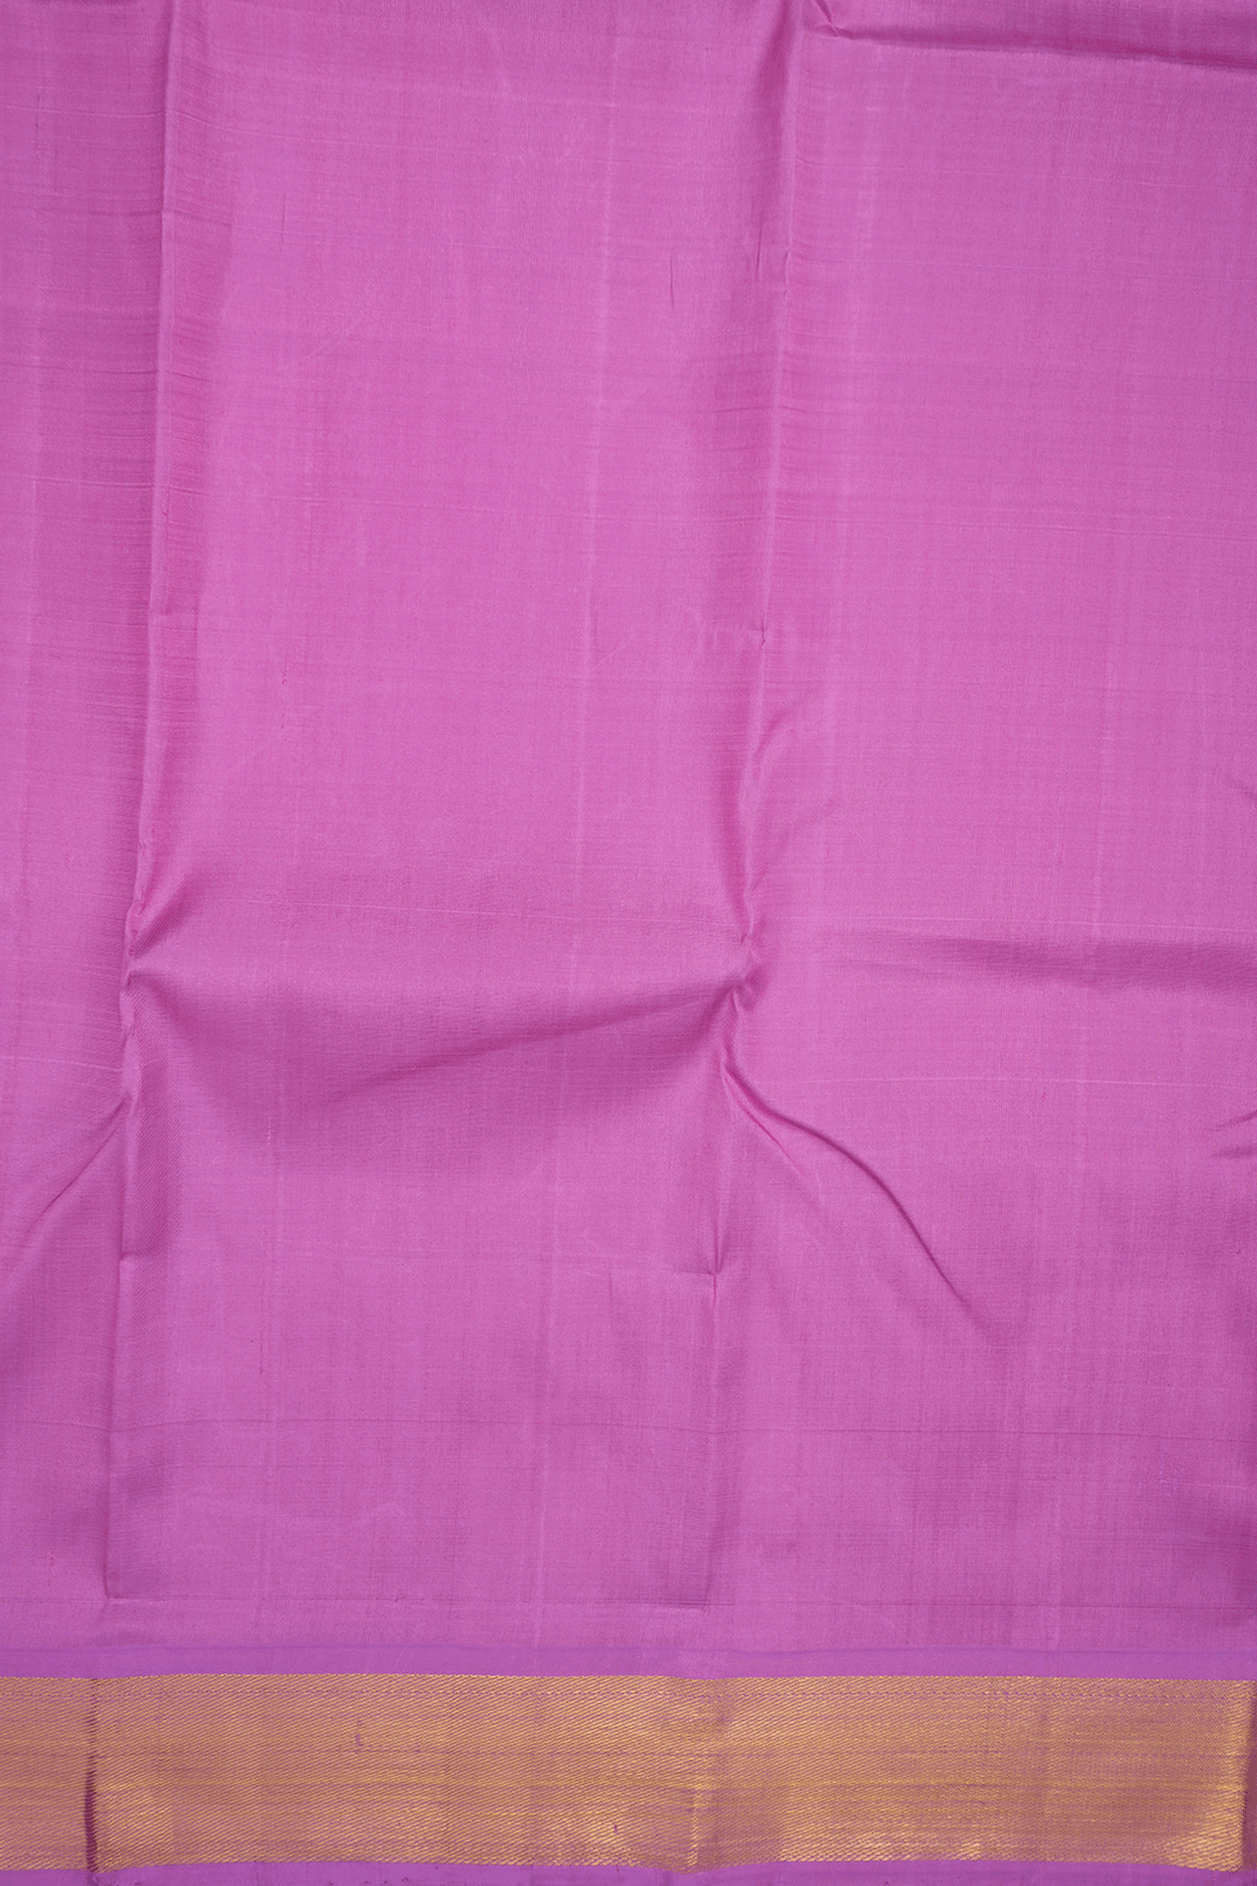 Twill Weave Border Lotus Pink Kanchipuram Silk Saree